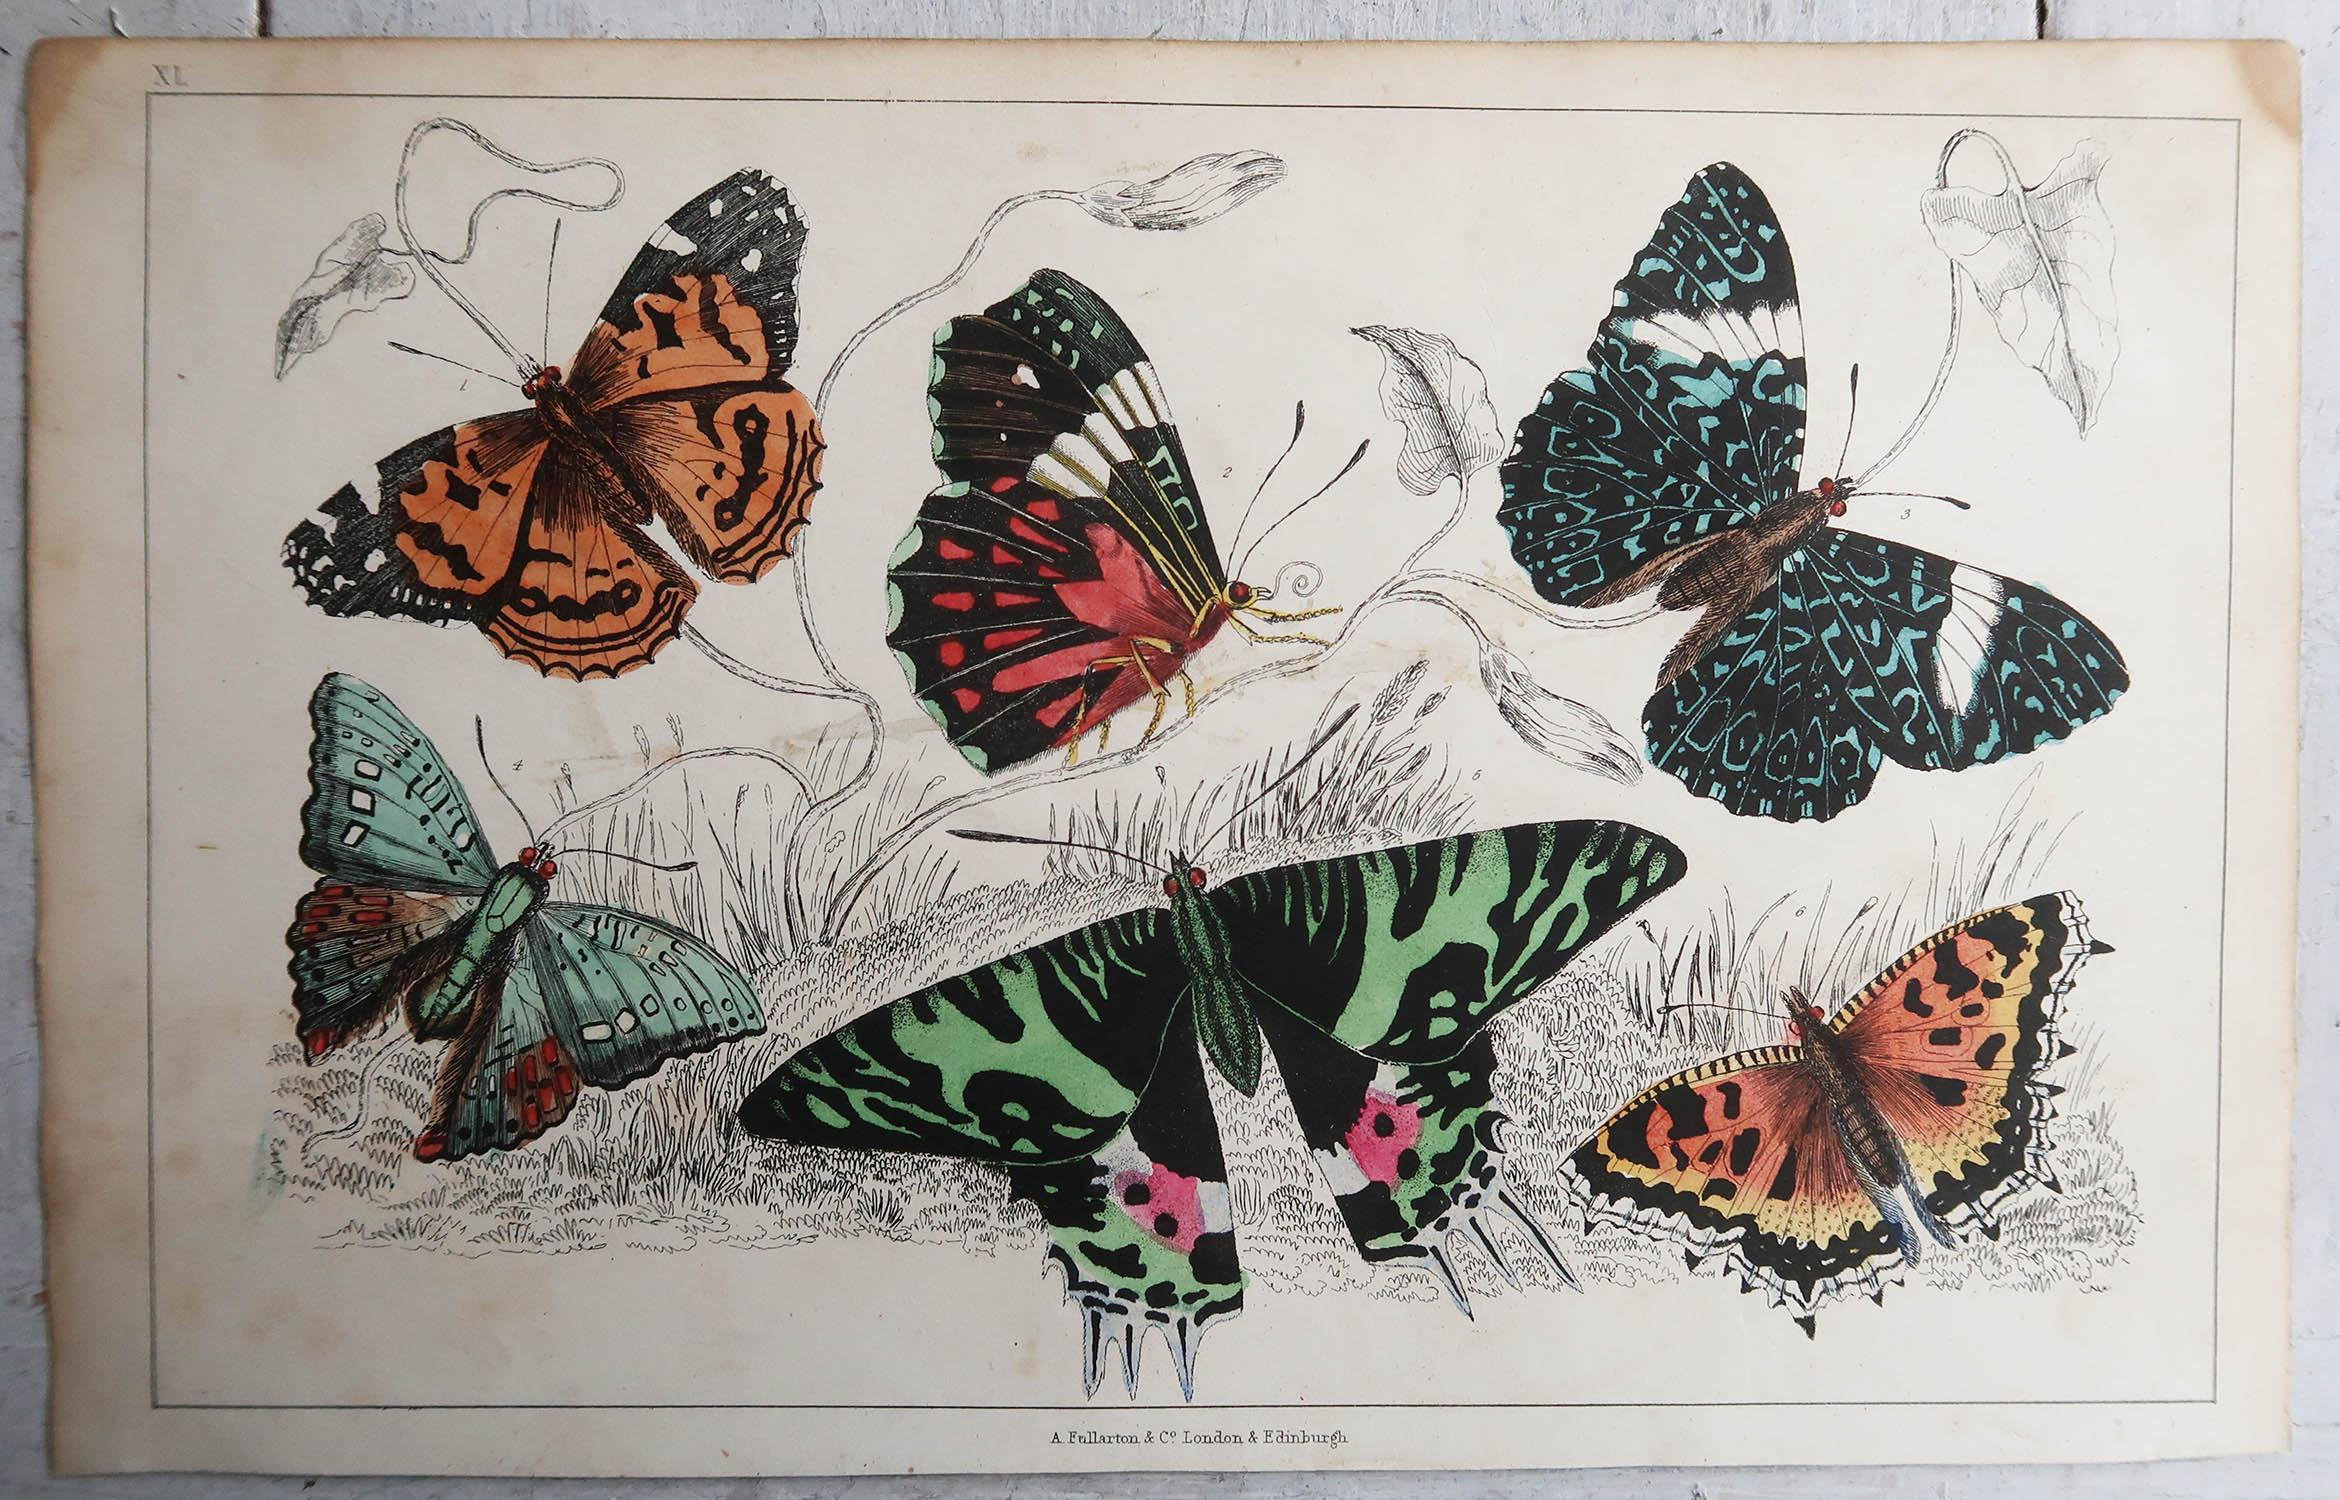 Folk Art Original Antique Print of Butterflies, 1847, Unframed For Sale